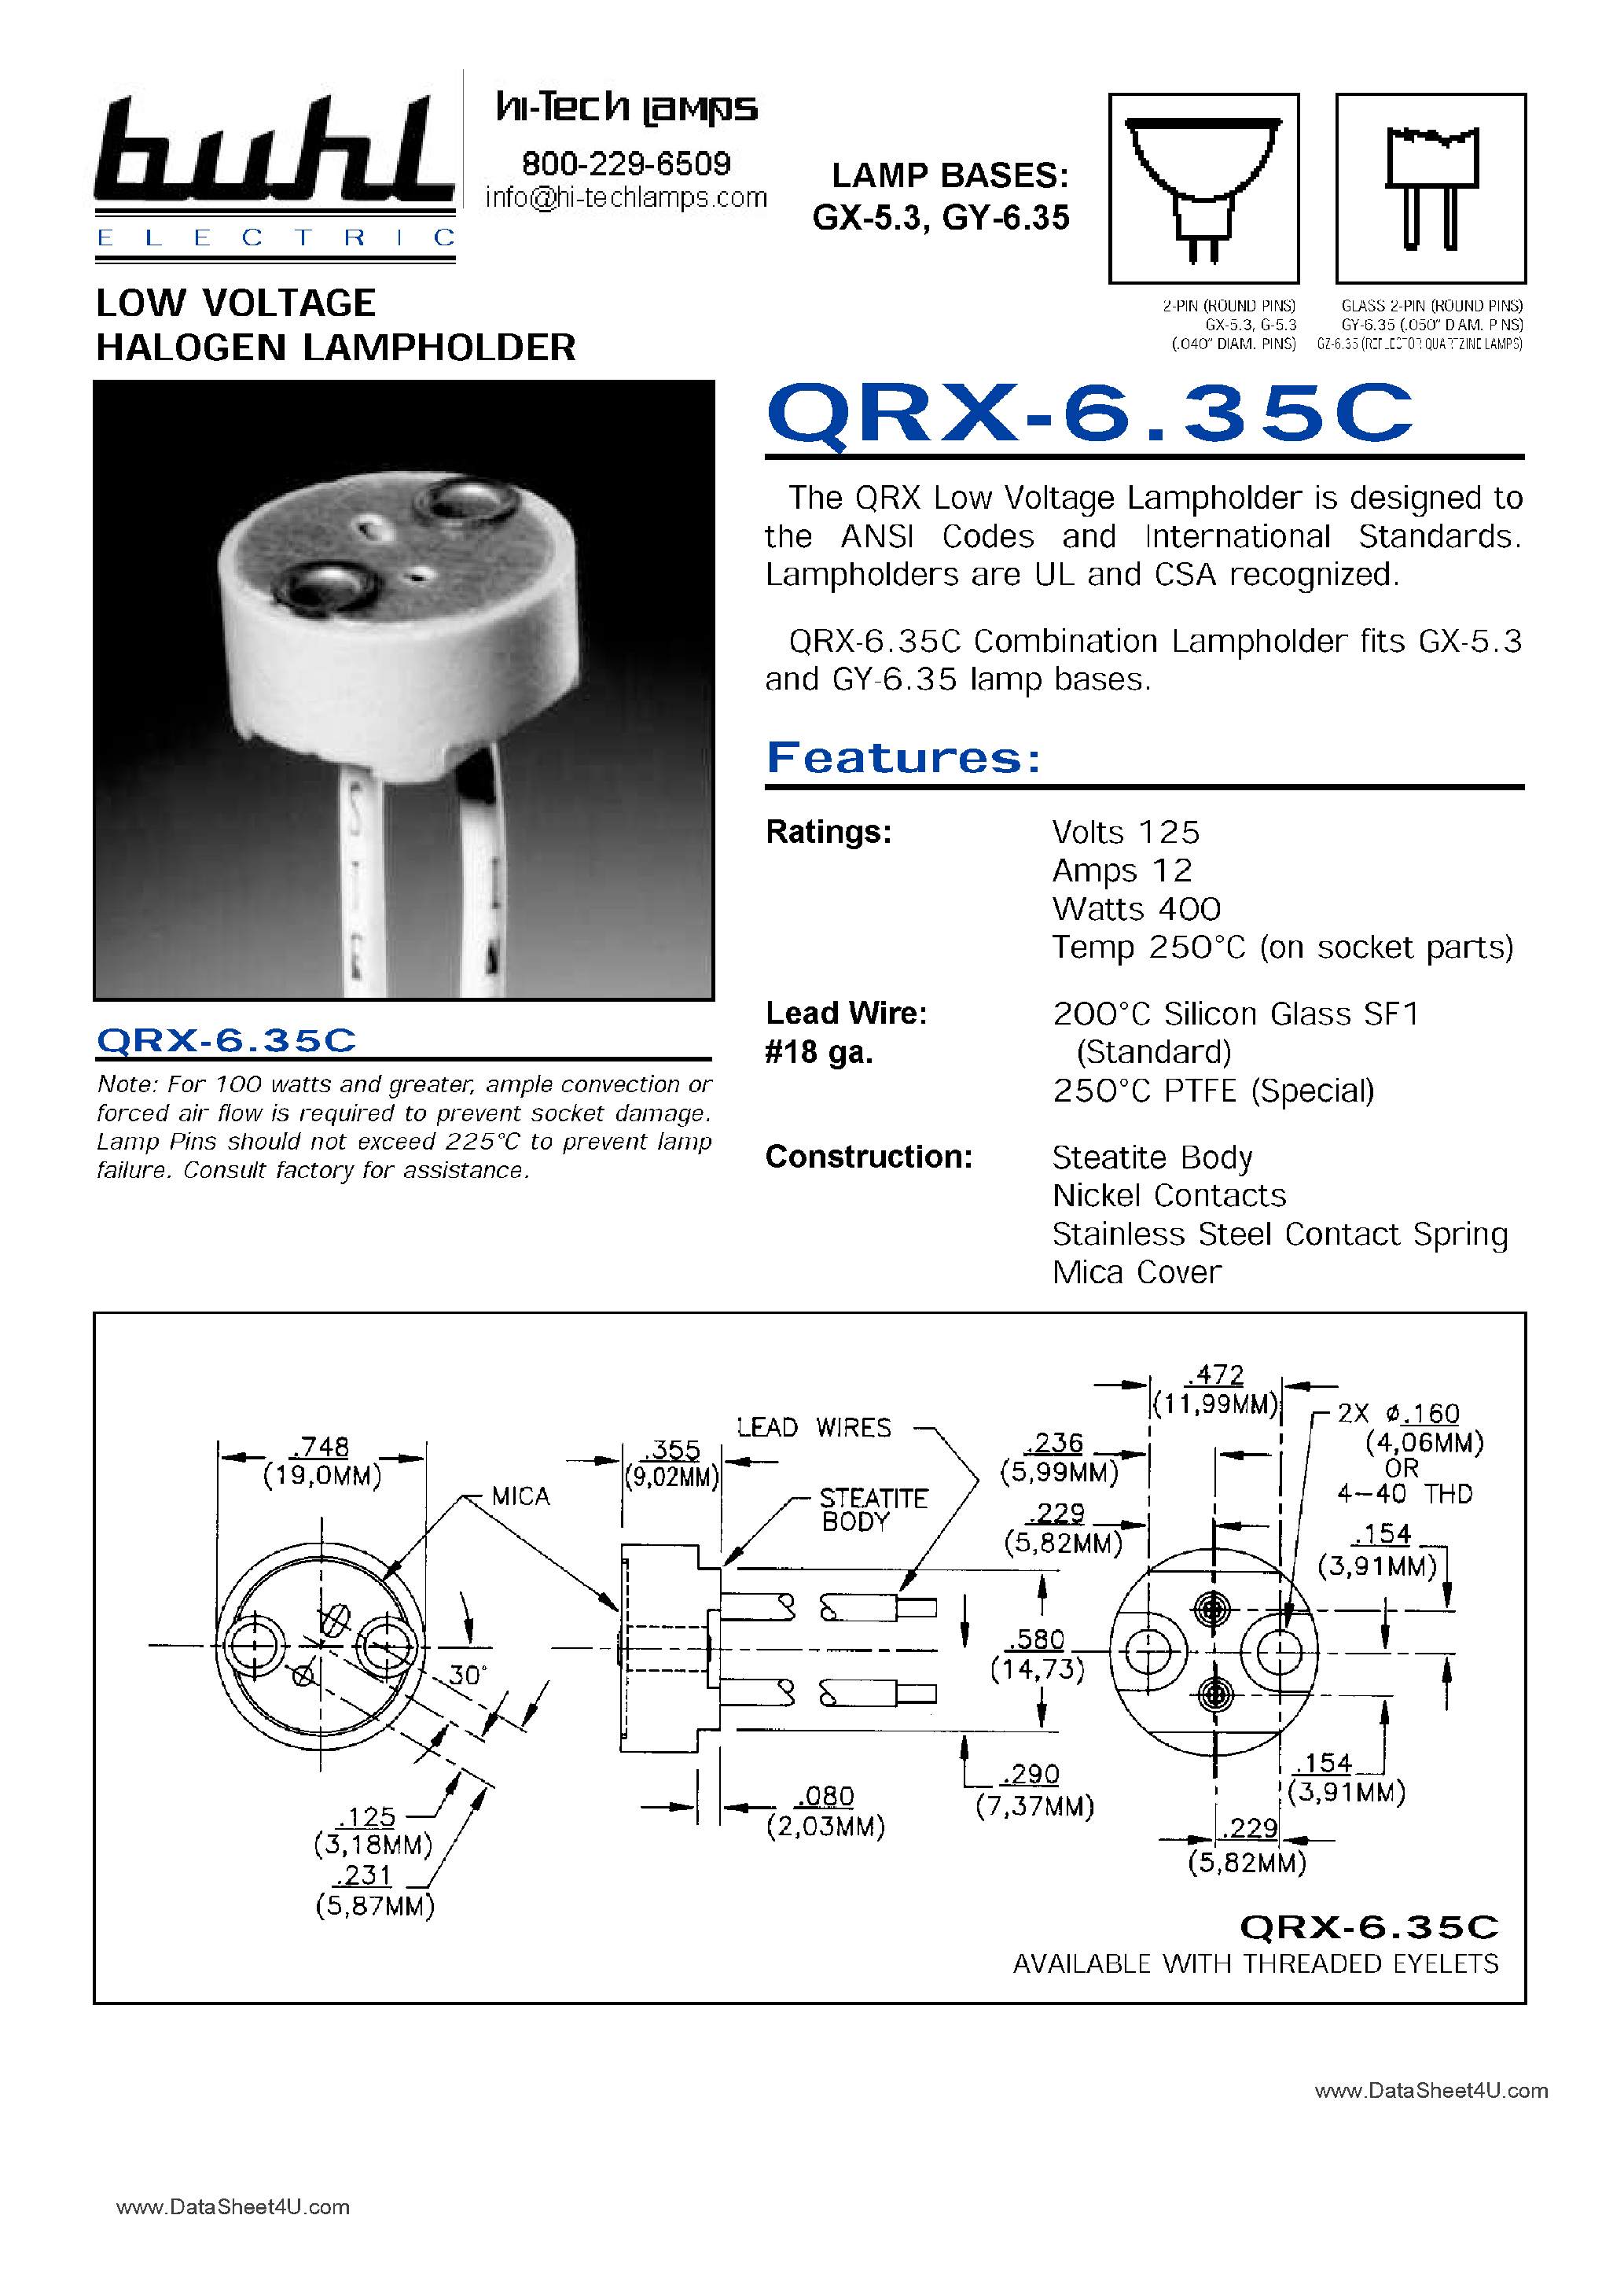 Datasheet QRX-6.35C - Low Voltage Halogen Lampholder page 1